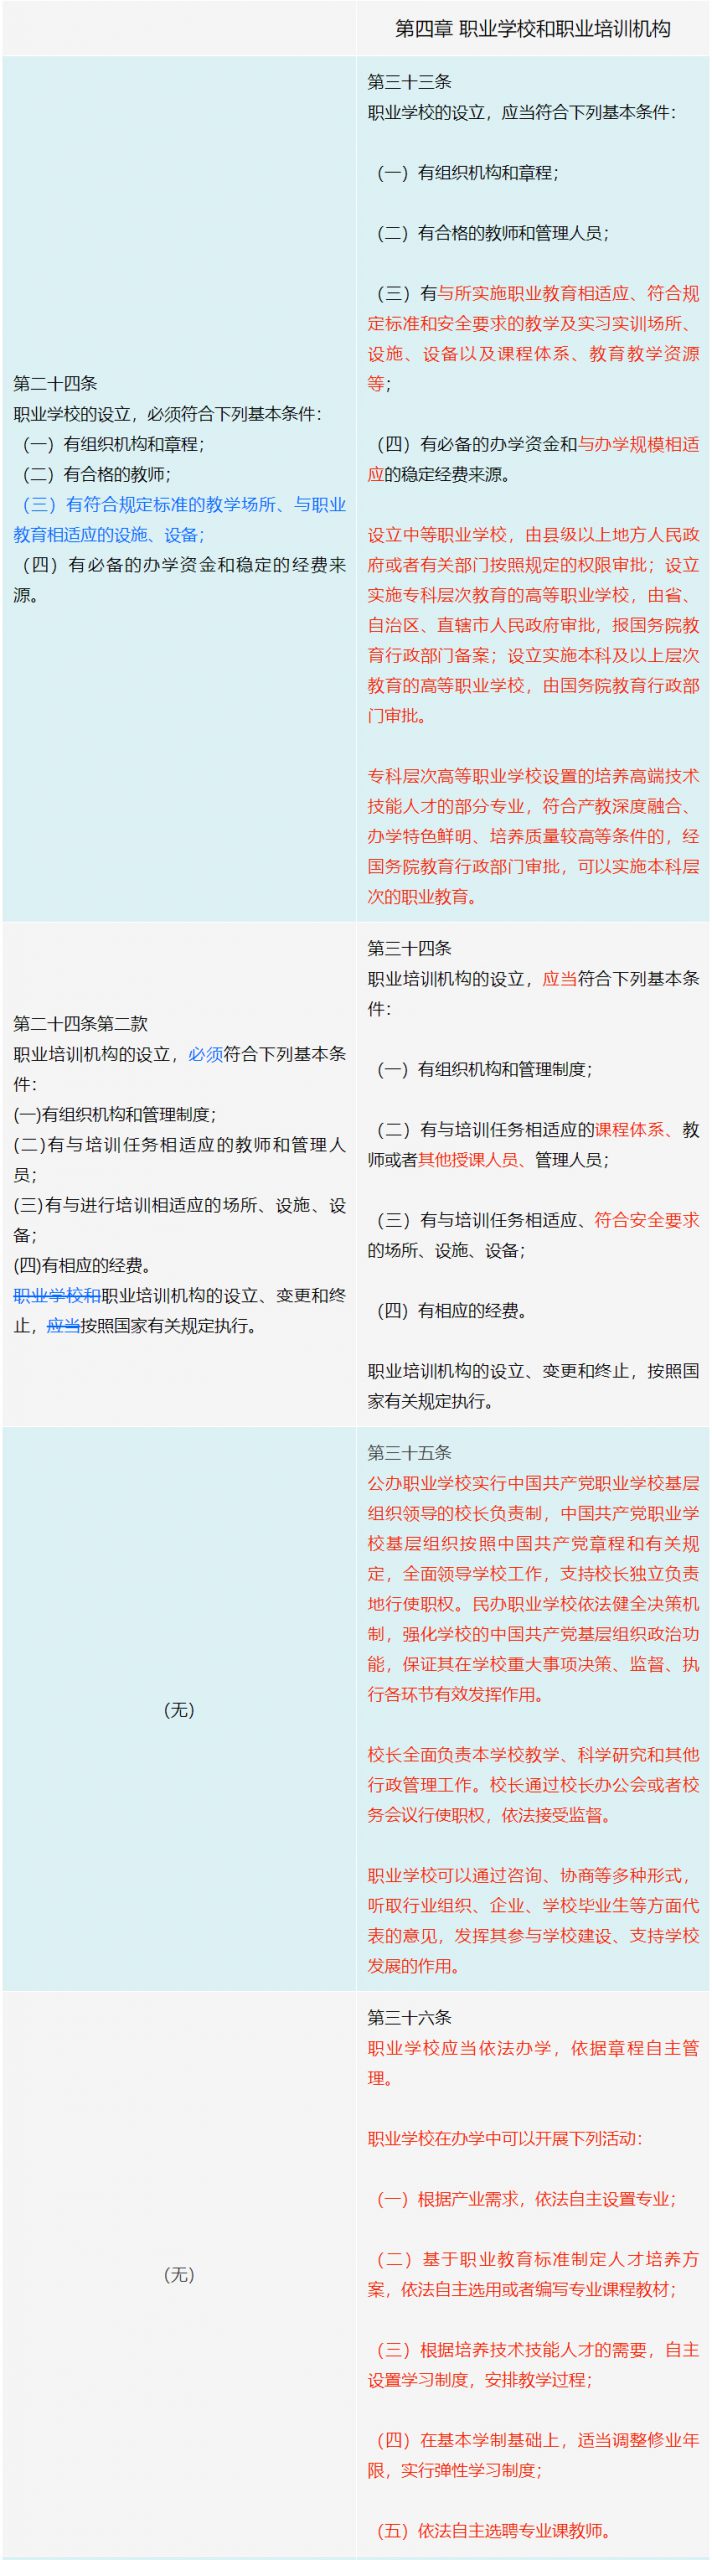 《中华人民共和国职业教育法》修订前后变化对照表（必读）